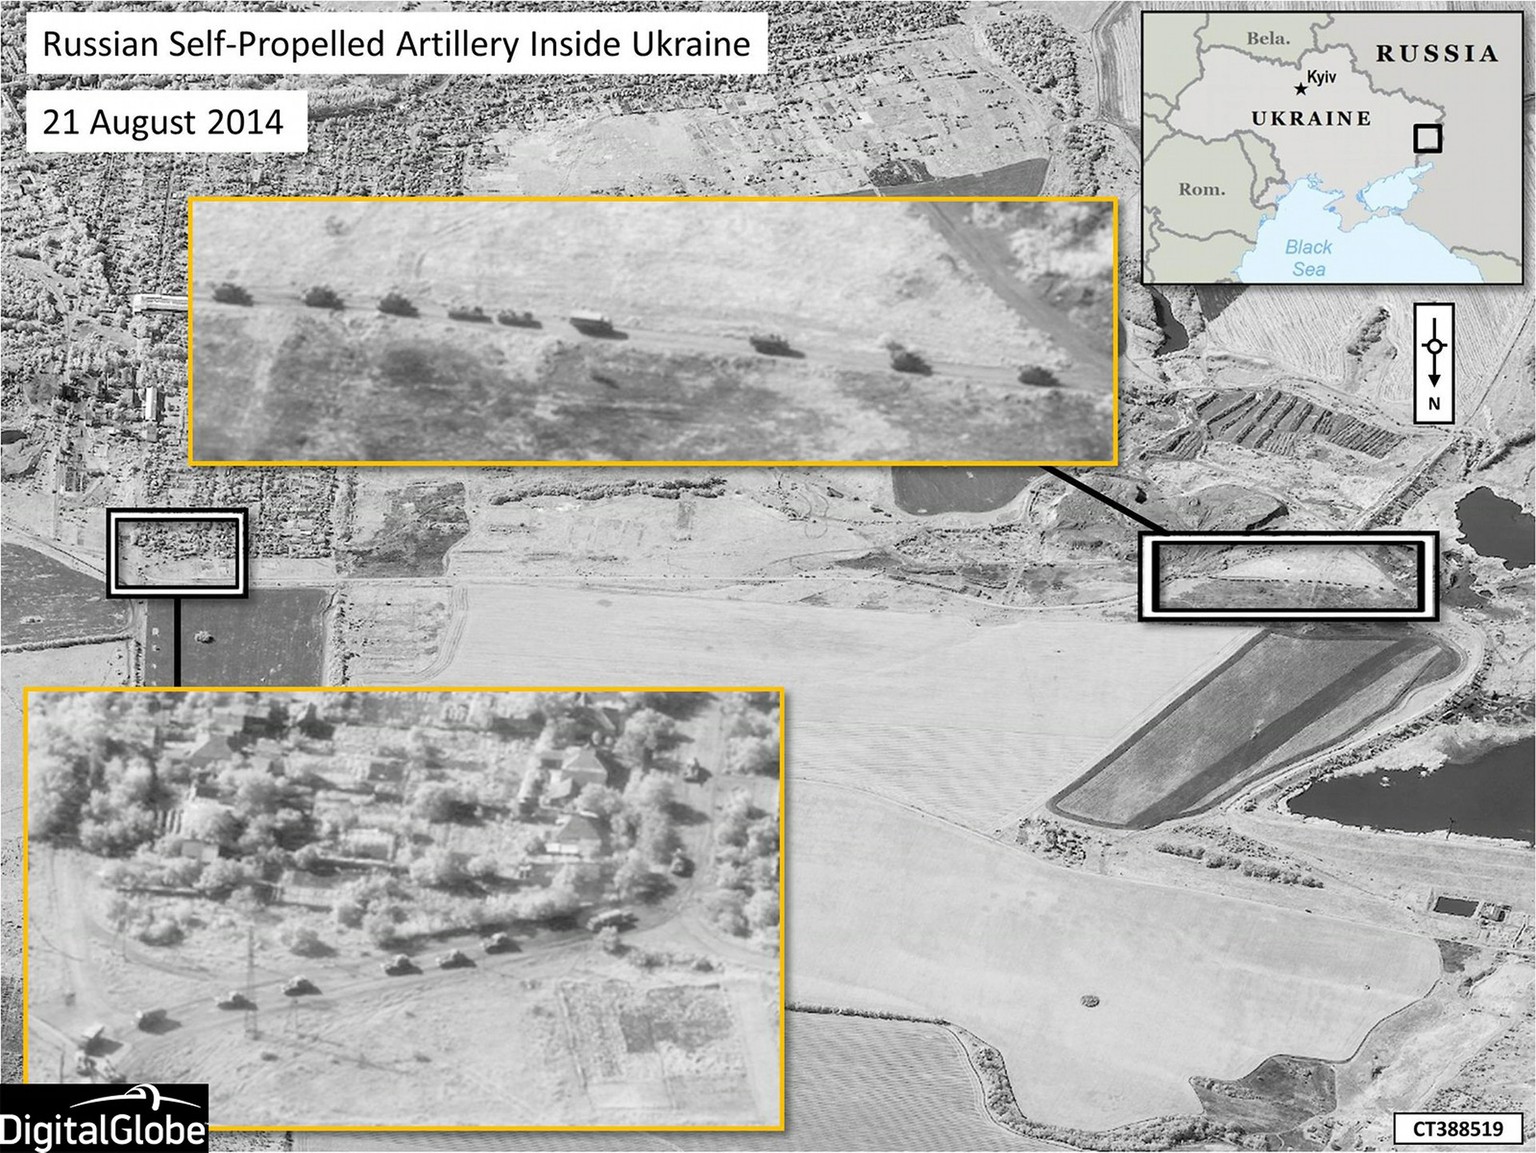 Satellitenbilder der NATO stützen die Theorie, dass russische Truppen in die Ukraine eingedrungen sind.